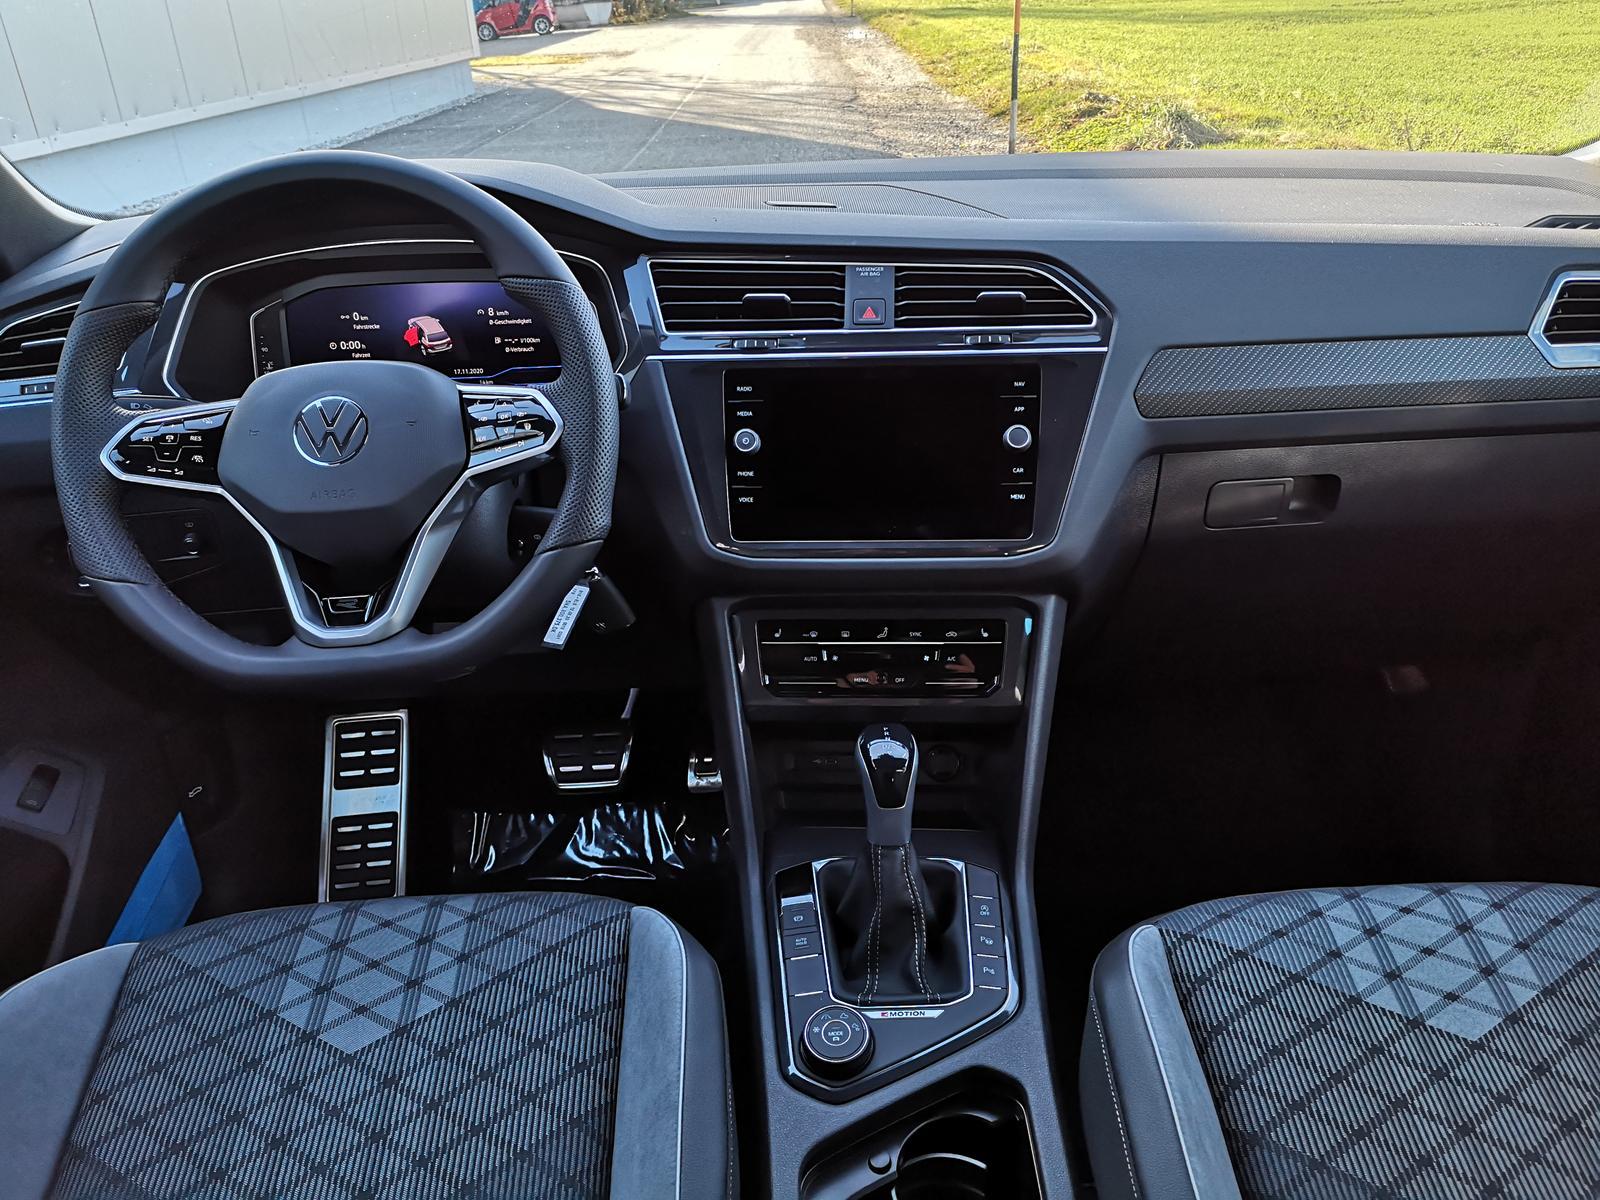 Volkswagen Tiguan 2.0TDI DSG 4Motion R-Line AHK Navi Cockpit   Fahrzeugangebot zu europäischen Bestpreisen mit Rabatt, günstiger kaufen